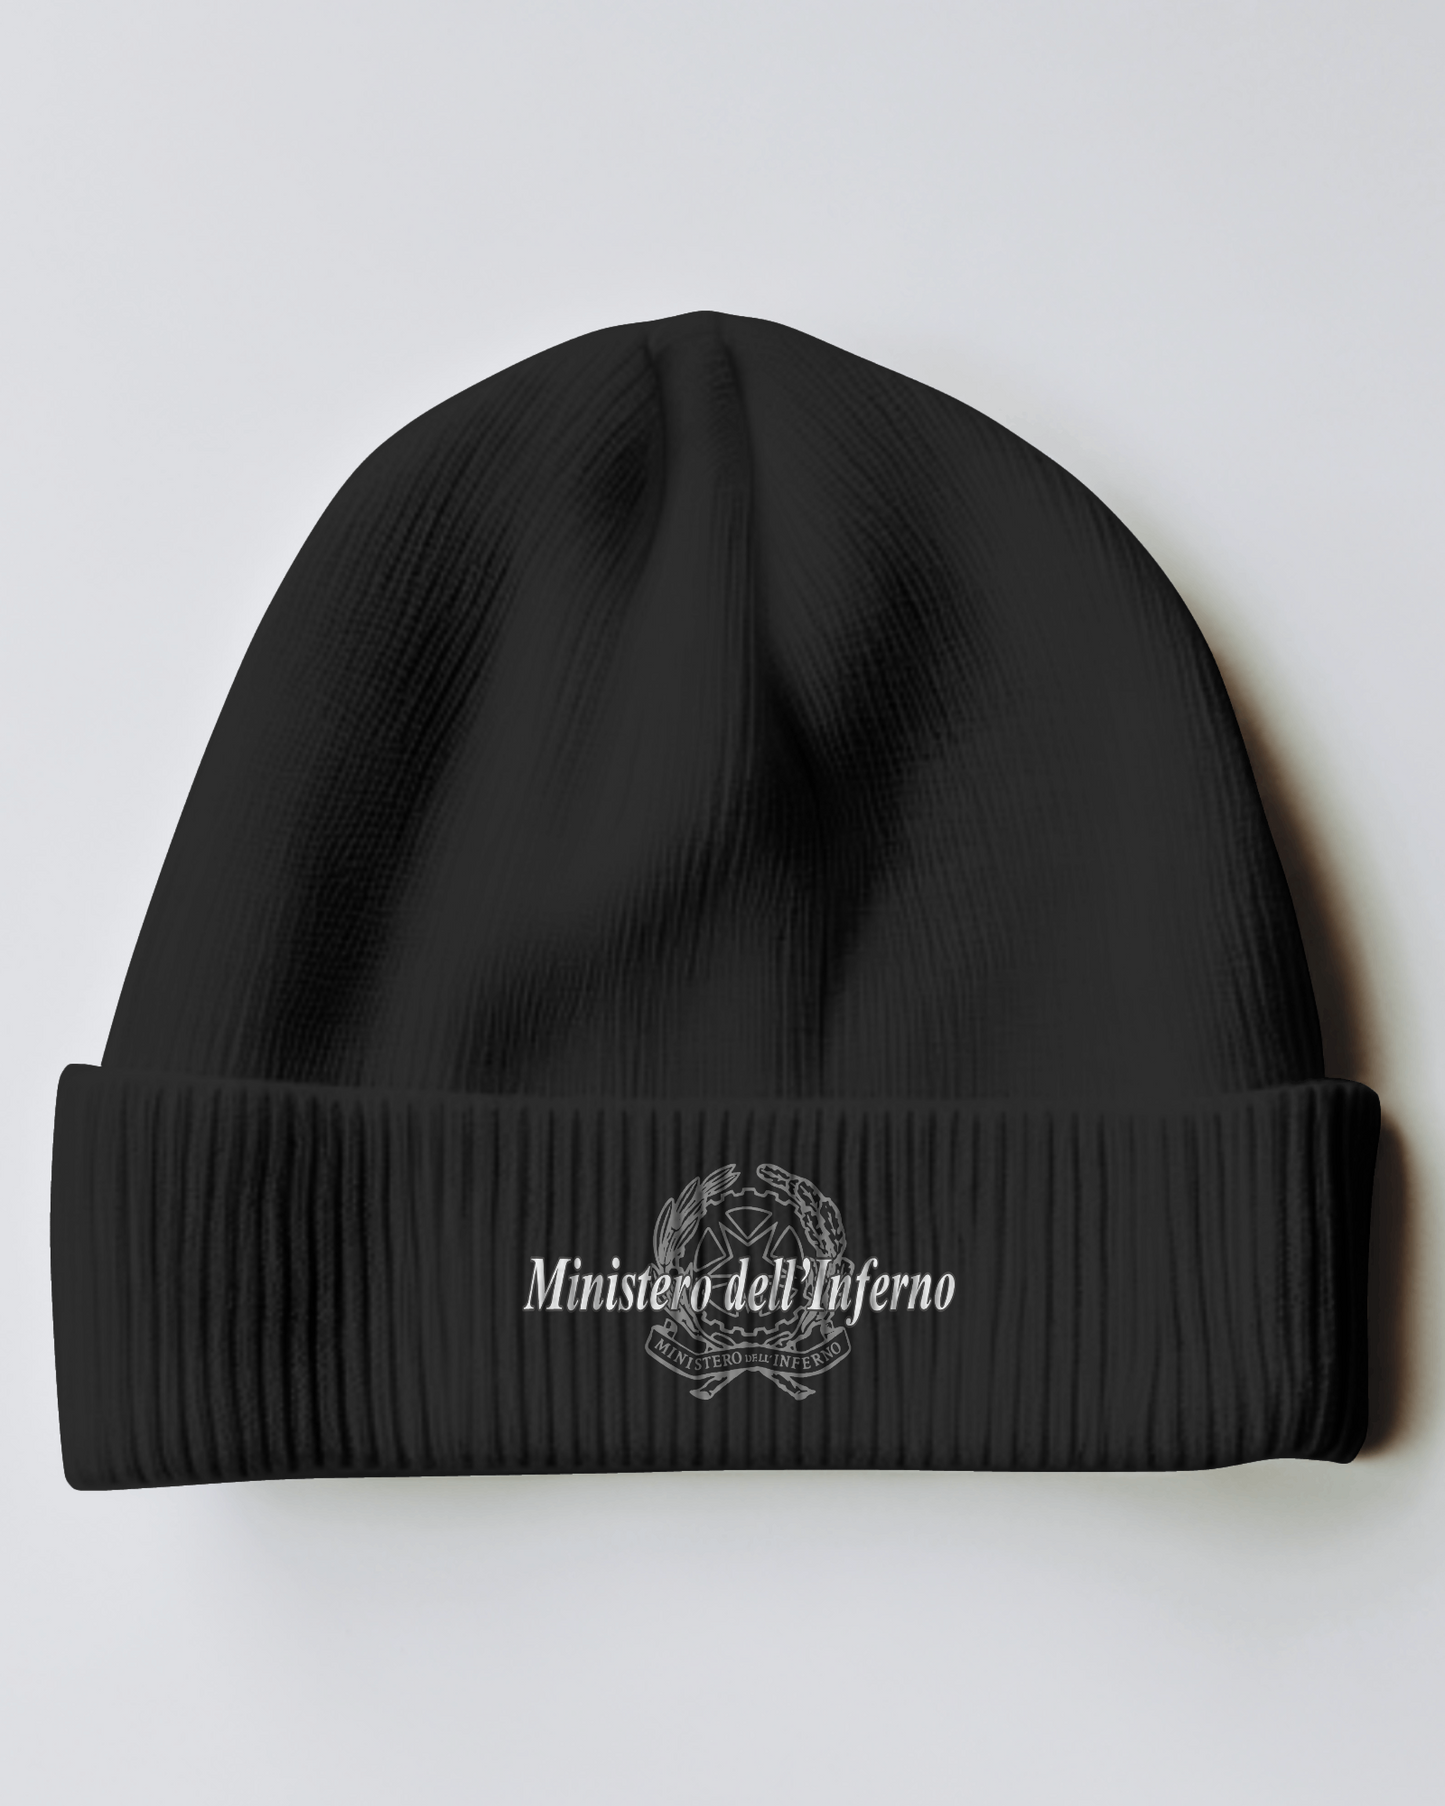 Cappellino invernale in maglia con stampa Ministero dell'inferno